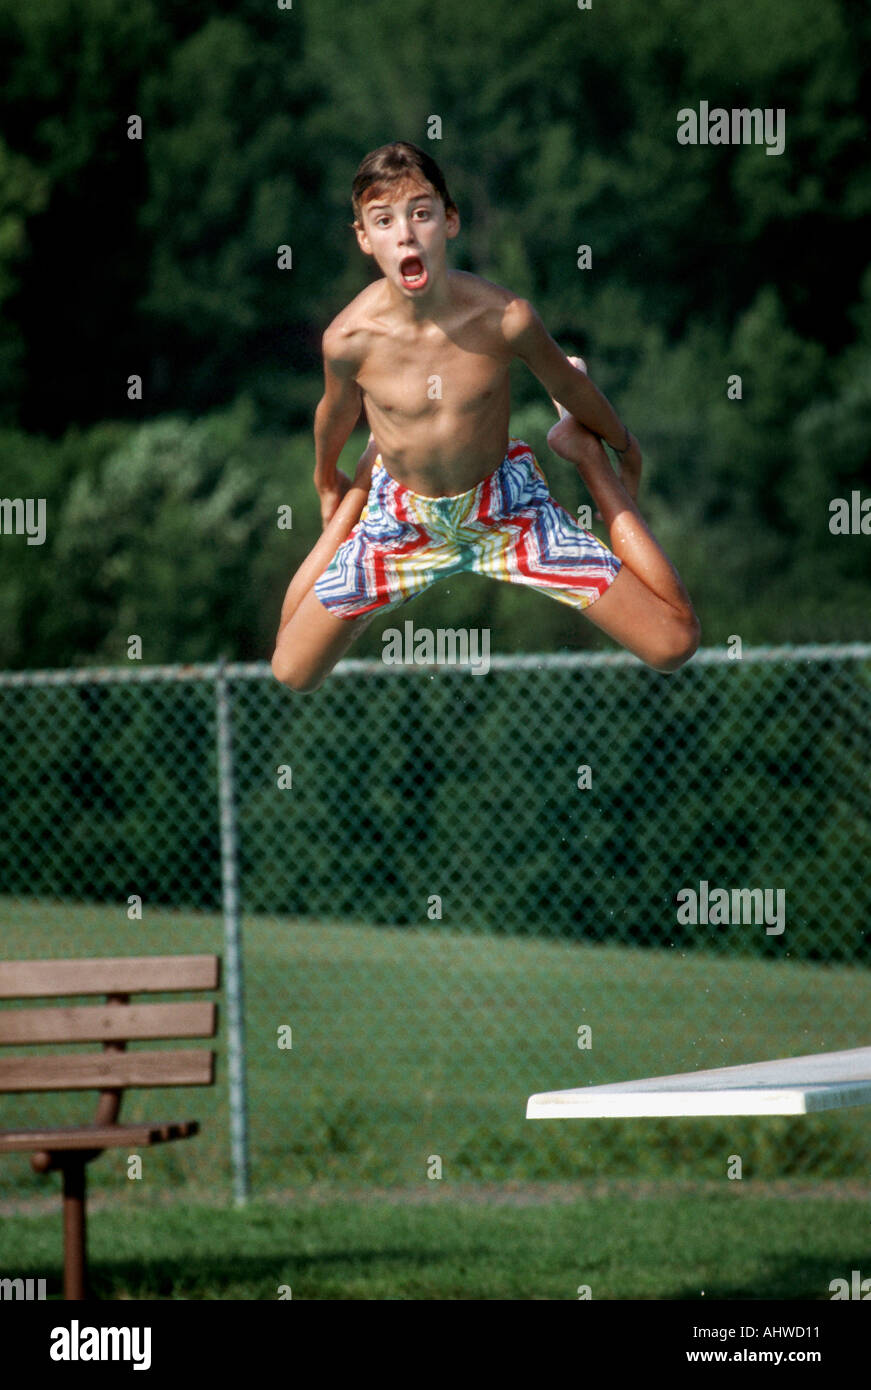 12 Jahre alter Junge aus zeigt, wie er von einem Sprungturm in einem öffentlichen Schwimmbad springt Stockfoto